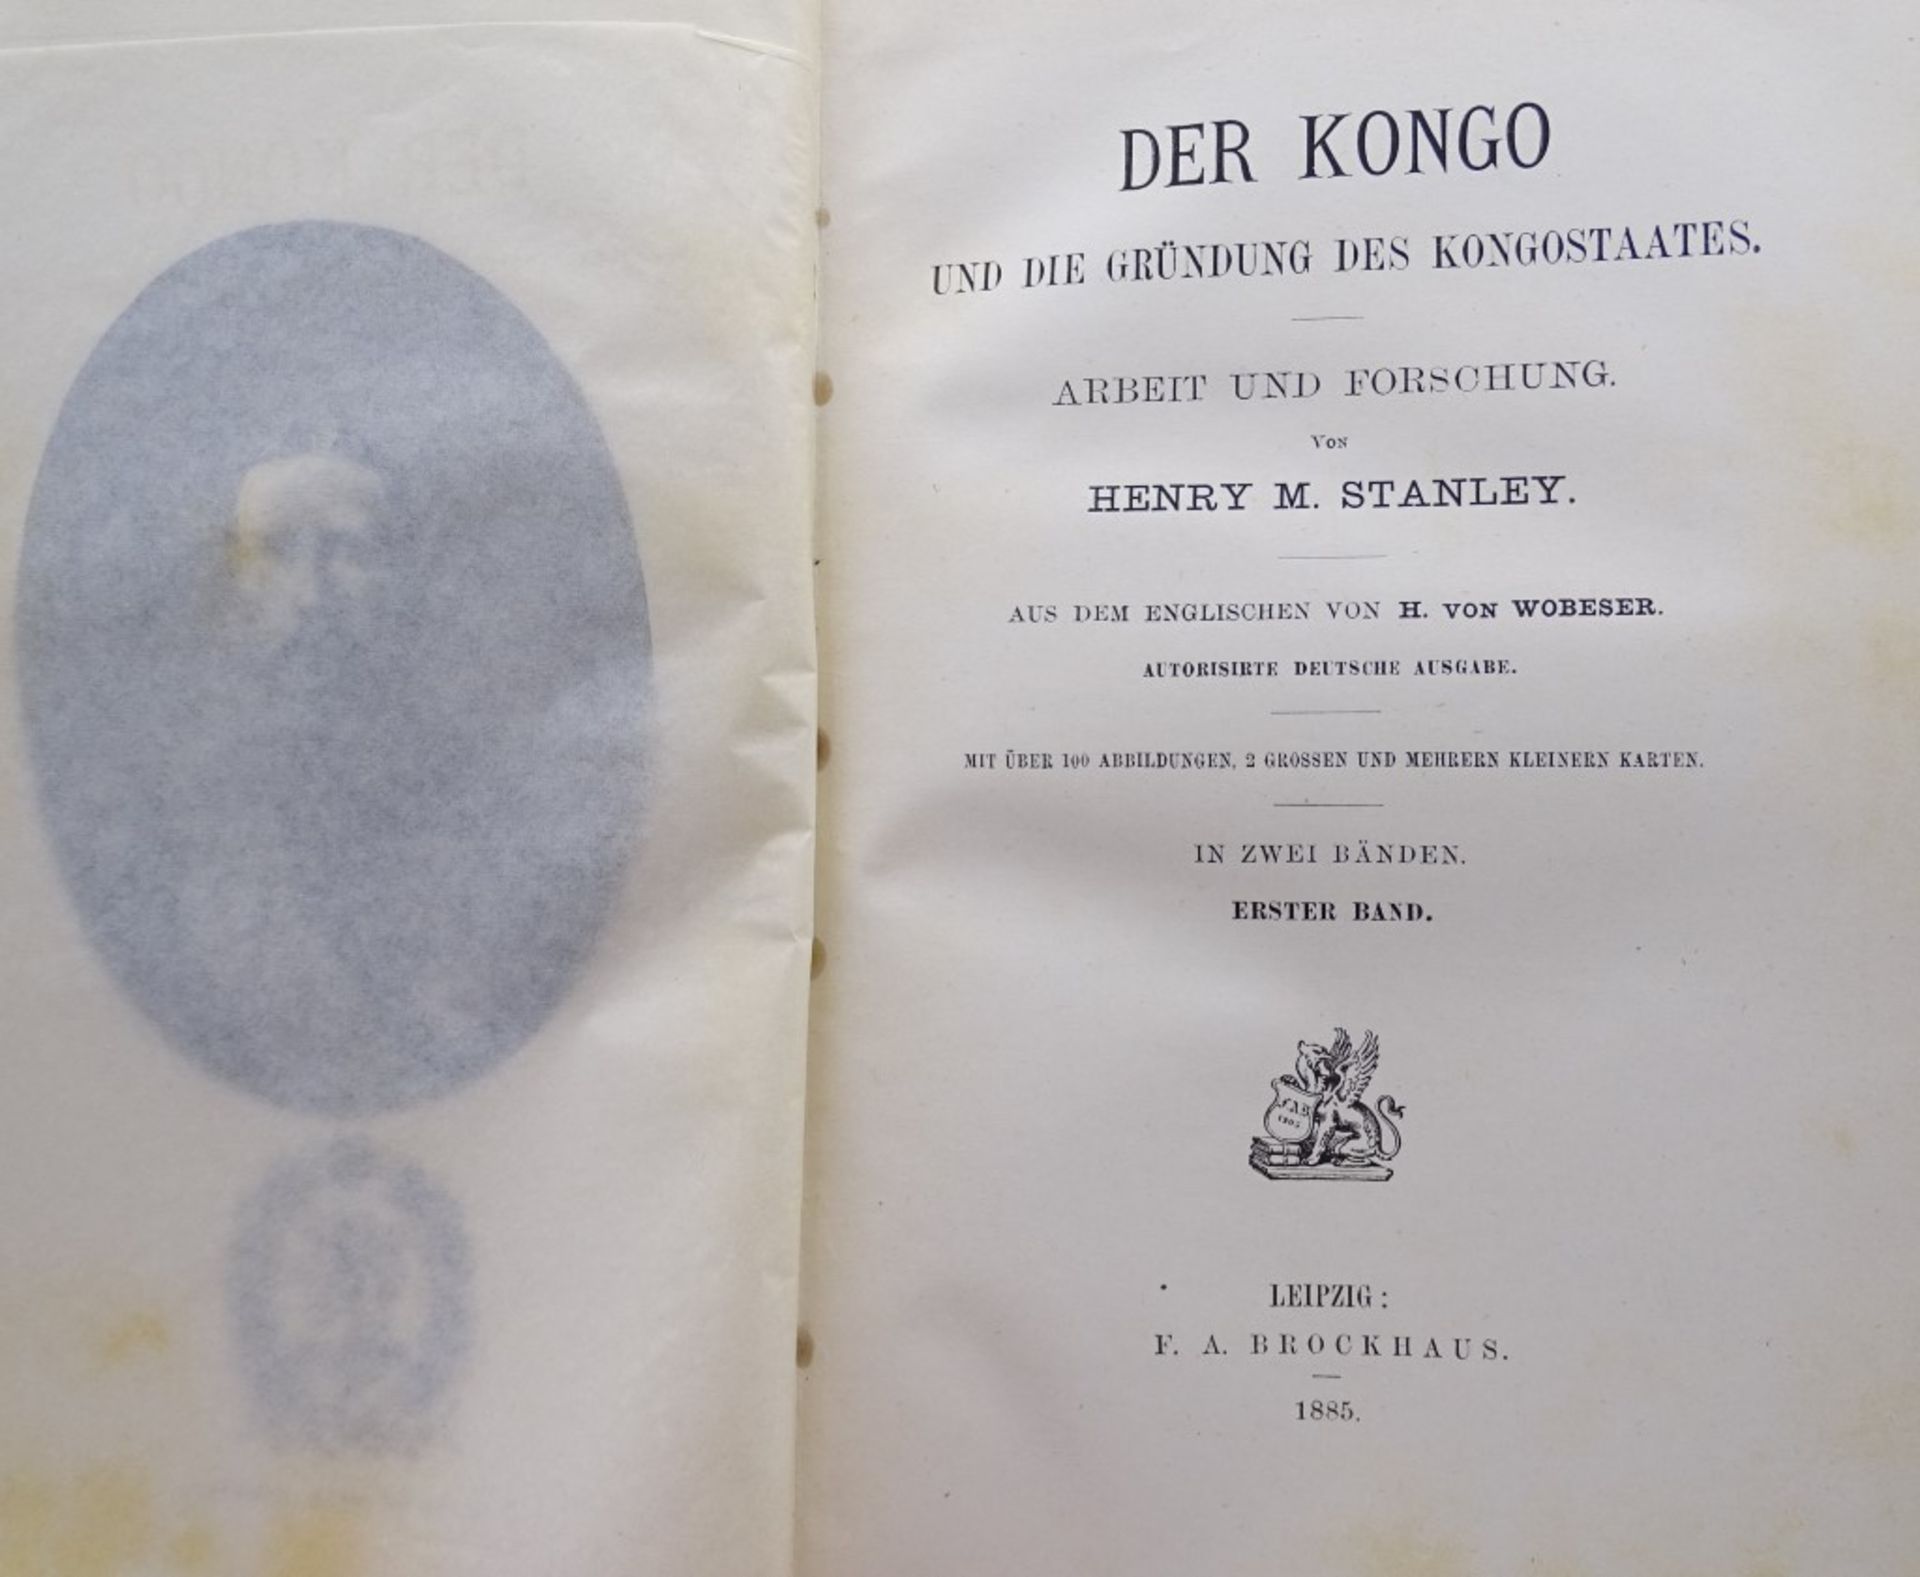 Der Kongo Band I + II,Stanley,Leipzig 1885 - Bild 2 aus 9